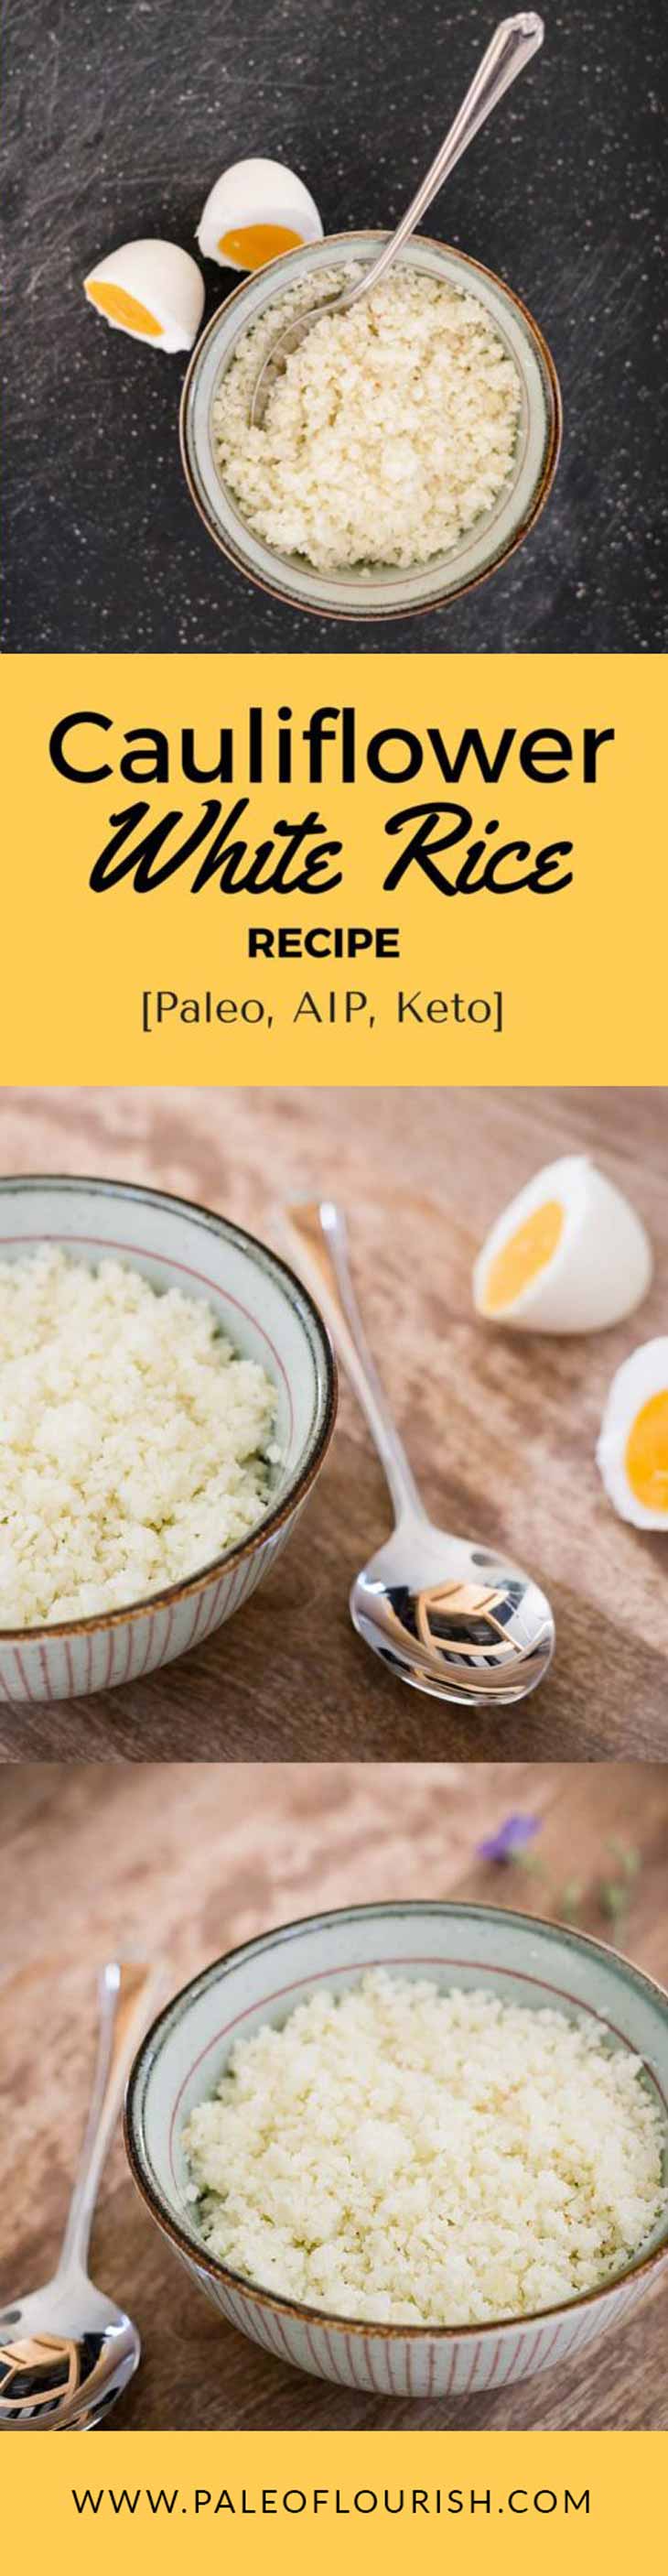 Cauliflower White Rice Recipe [Paleo, AIP, Keto] #paleo #AIP #keto #recipes = https://paleoflourish.com/cauliflower-white-rice-recipe